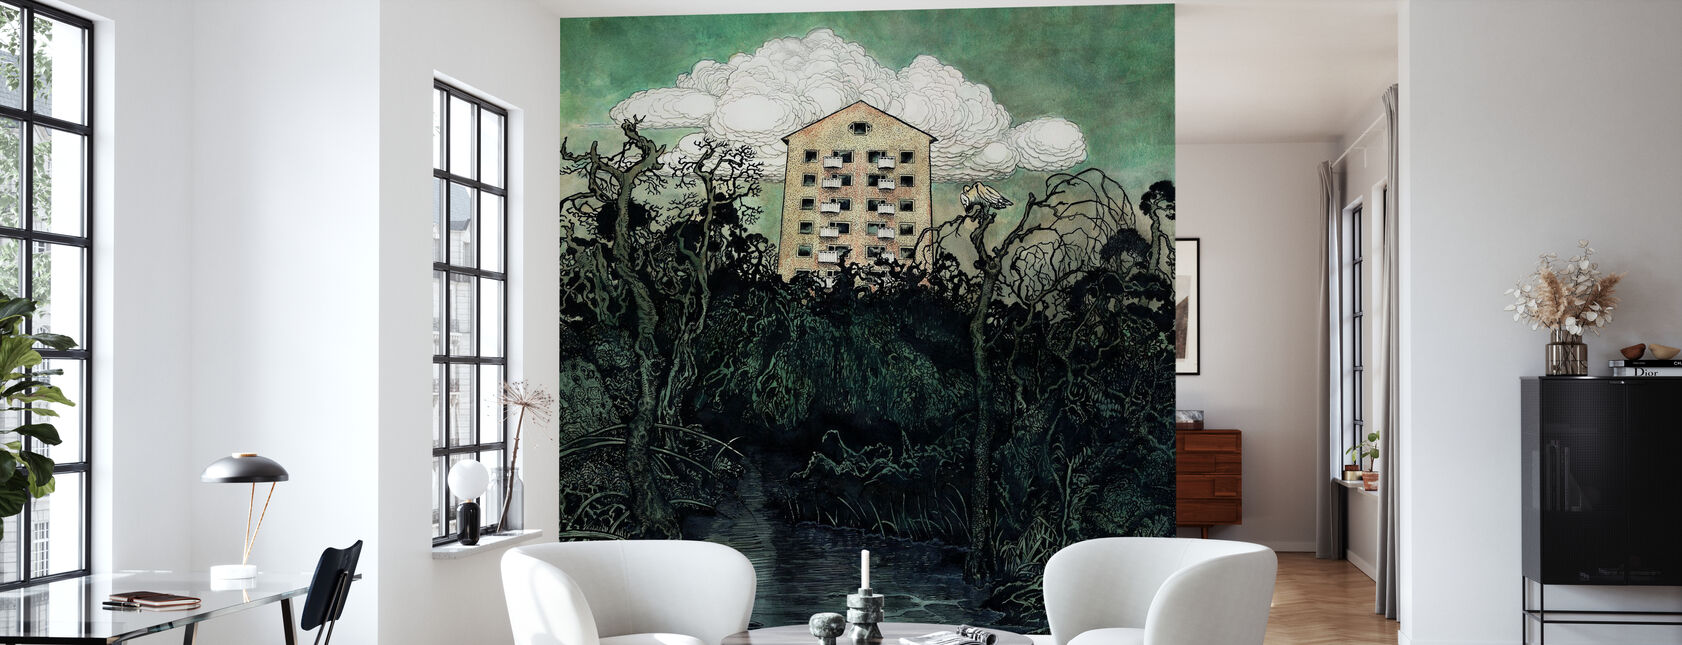 Tower Owl - Wallpaper - Living Room